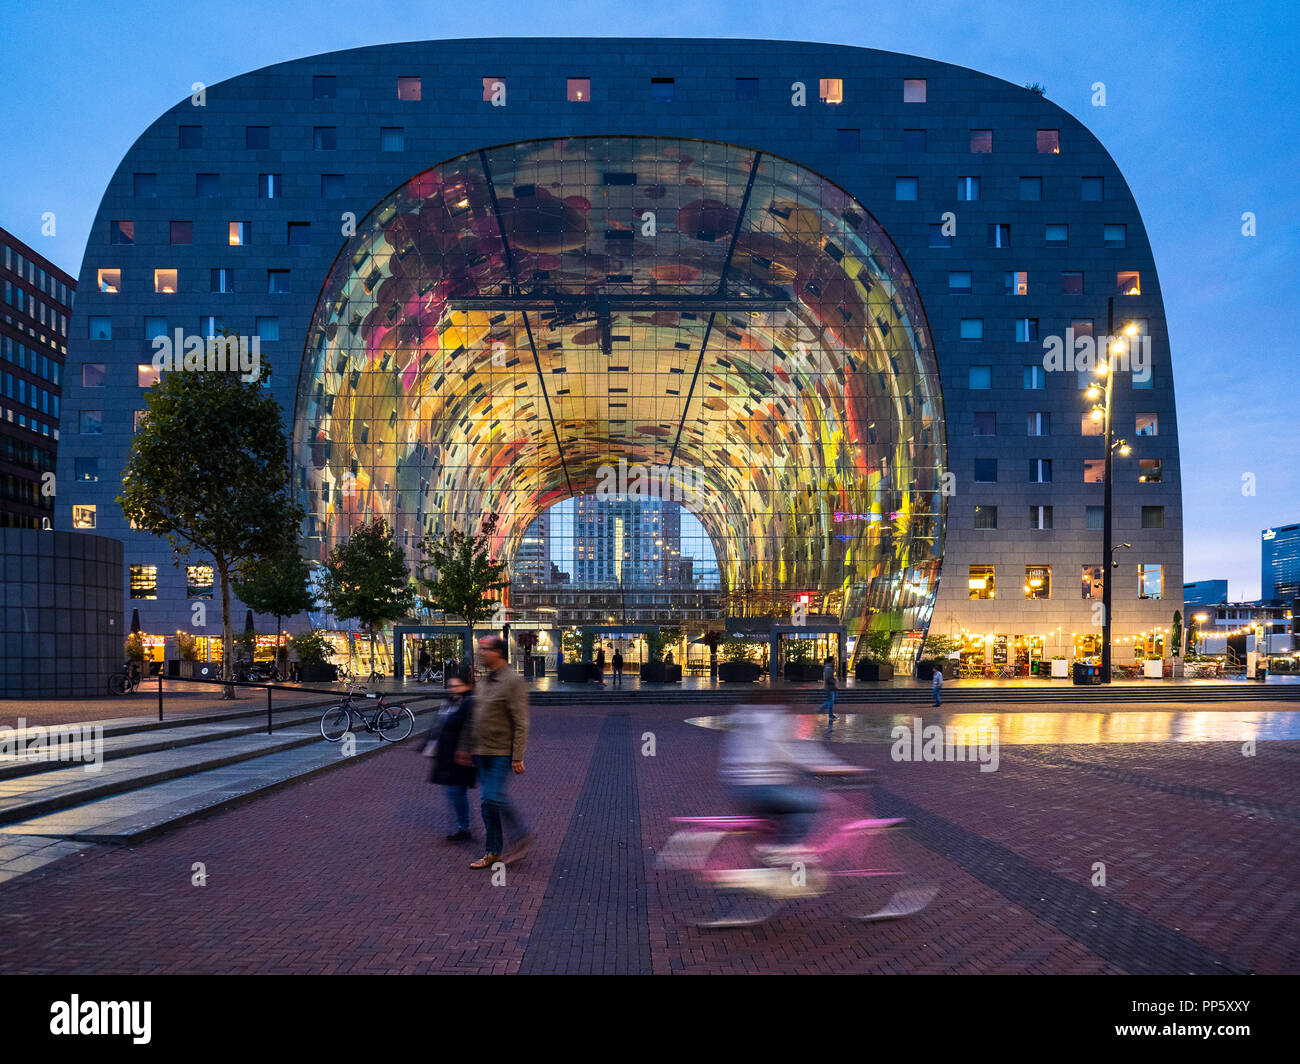 Markthal Rotterdam Rotterdam sala mercato aperto 2014 comprende un grande mercato coperto con appartamenti residenziali e gli uffici di cui sopra. Architetto MVRDV Foto Stock